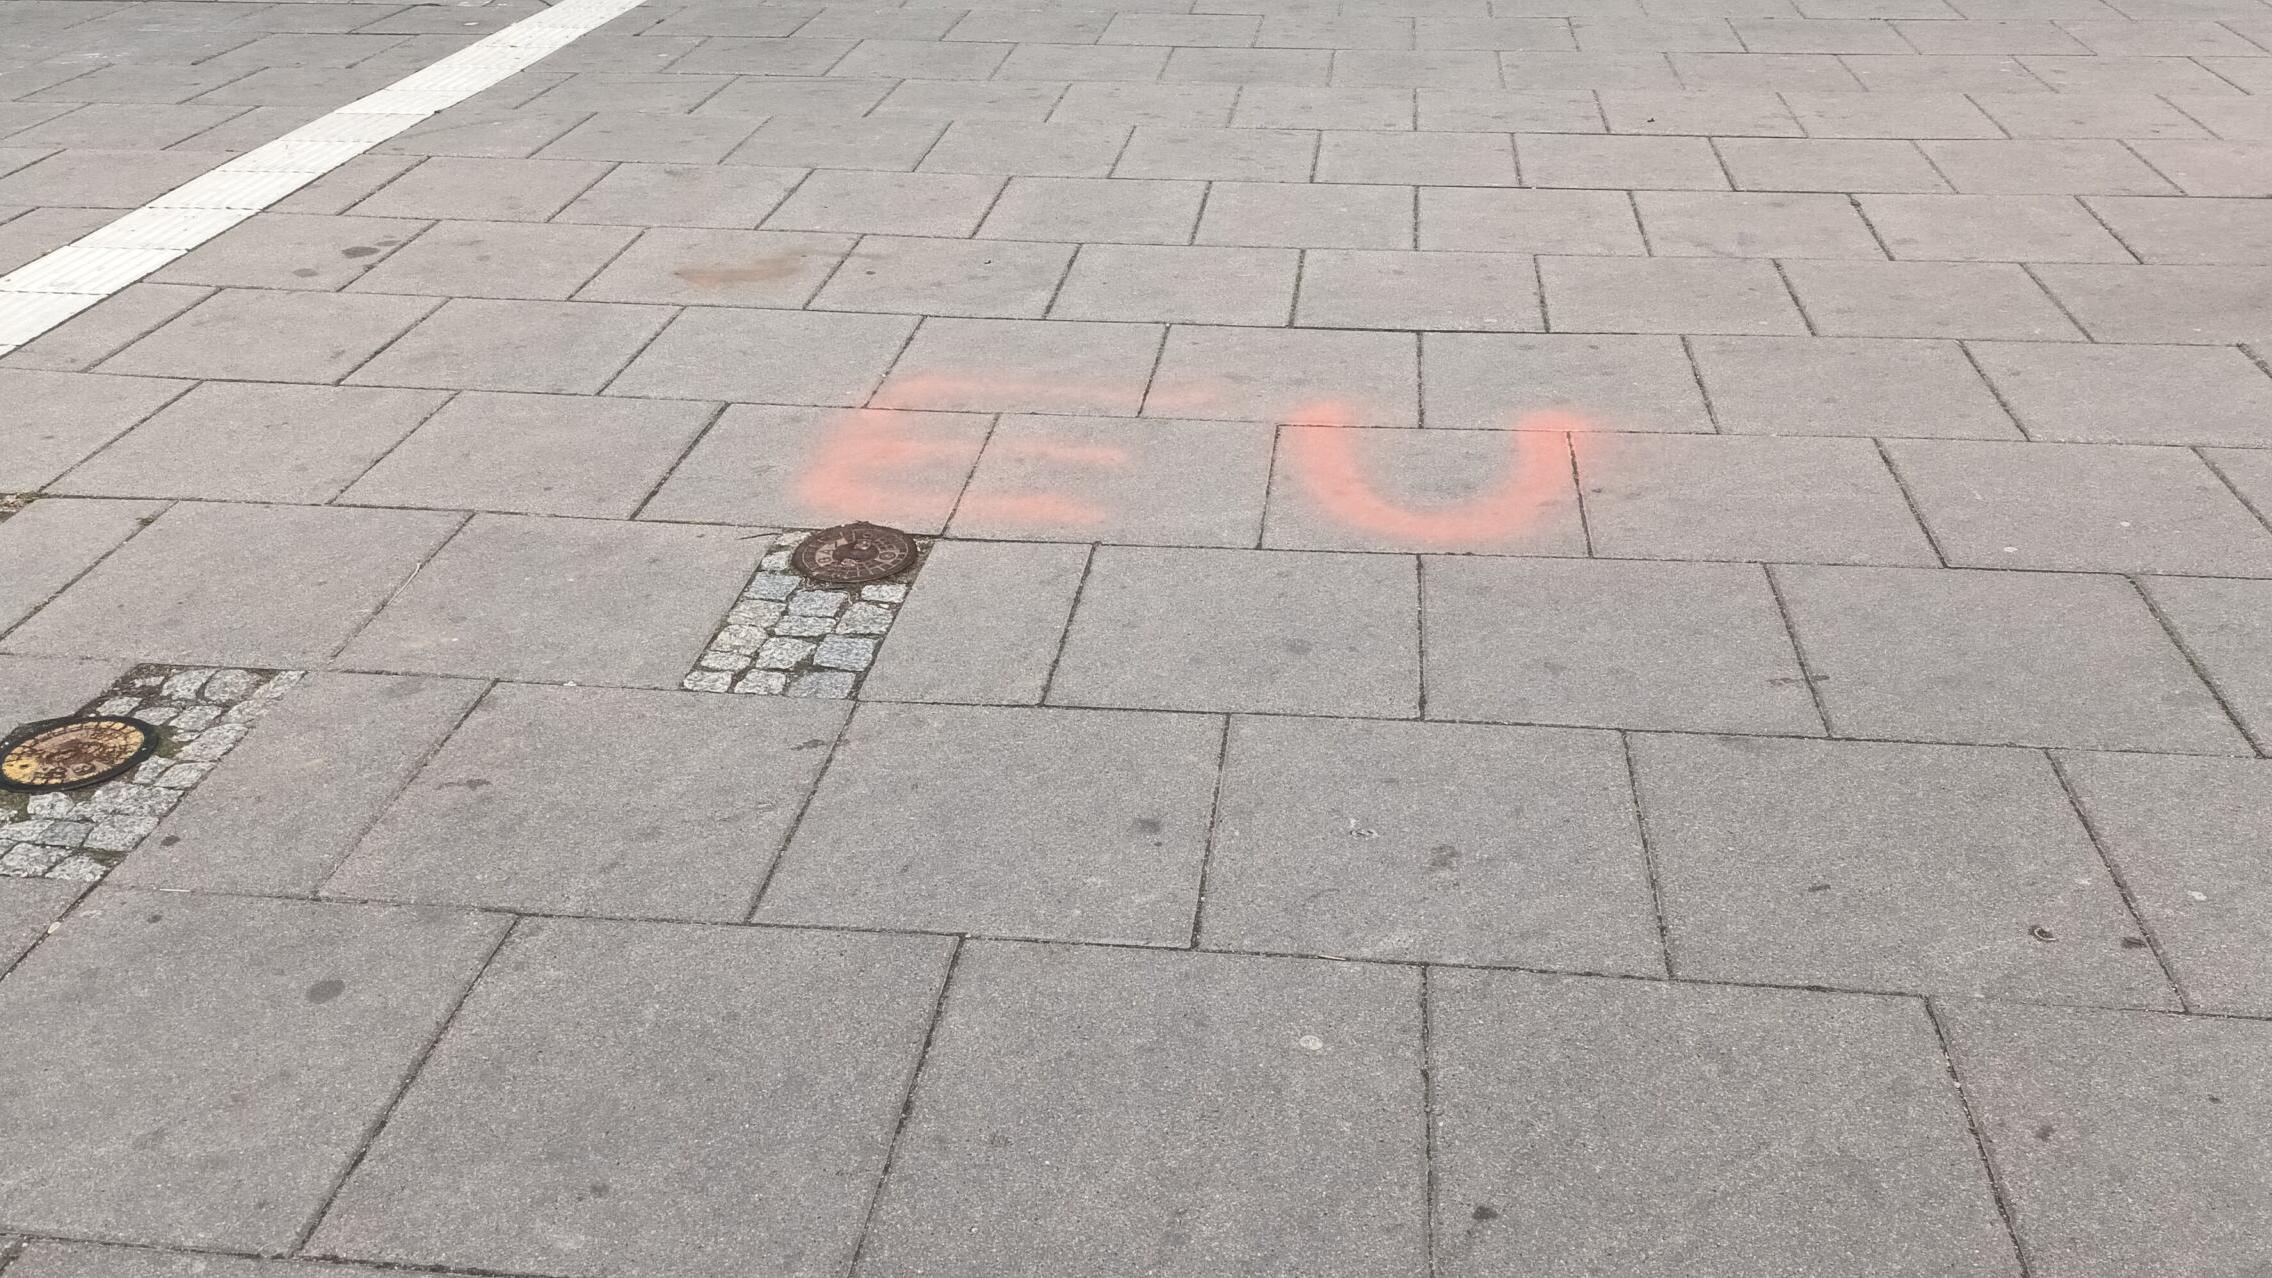 Czerwone litery "EU" słabo widoczne na chodniku